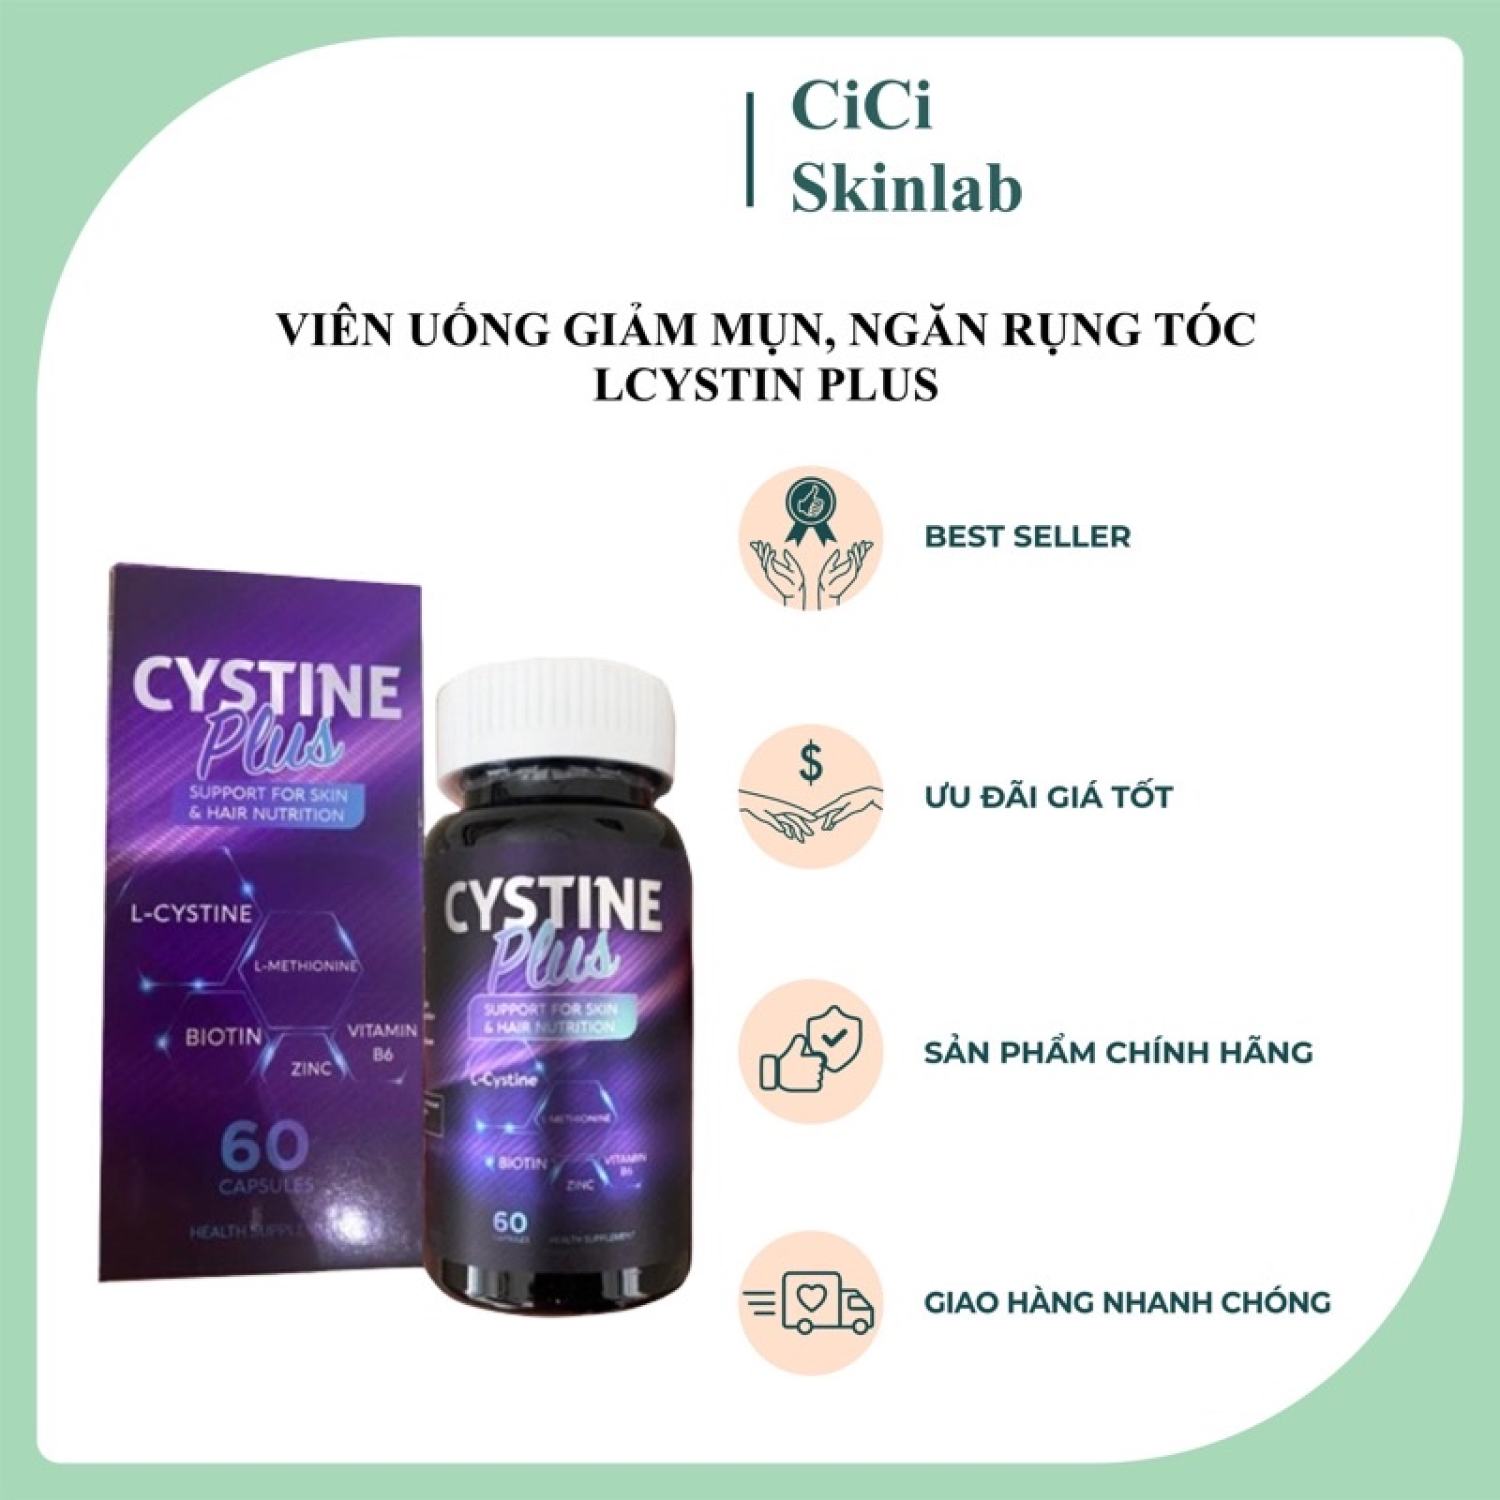 [Hàng Chính Hãng] Cystine Plus - Viên uống giảm mụn, ngăn rụng tóc, giảm sắc tố và làm đẹp da thumbnail